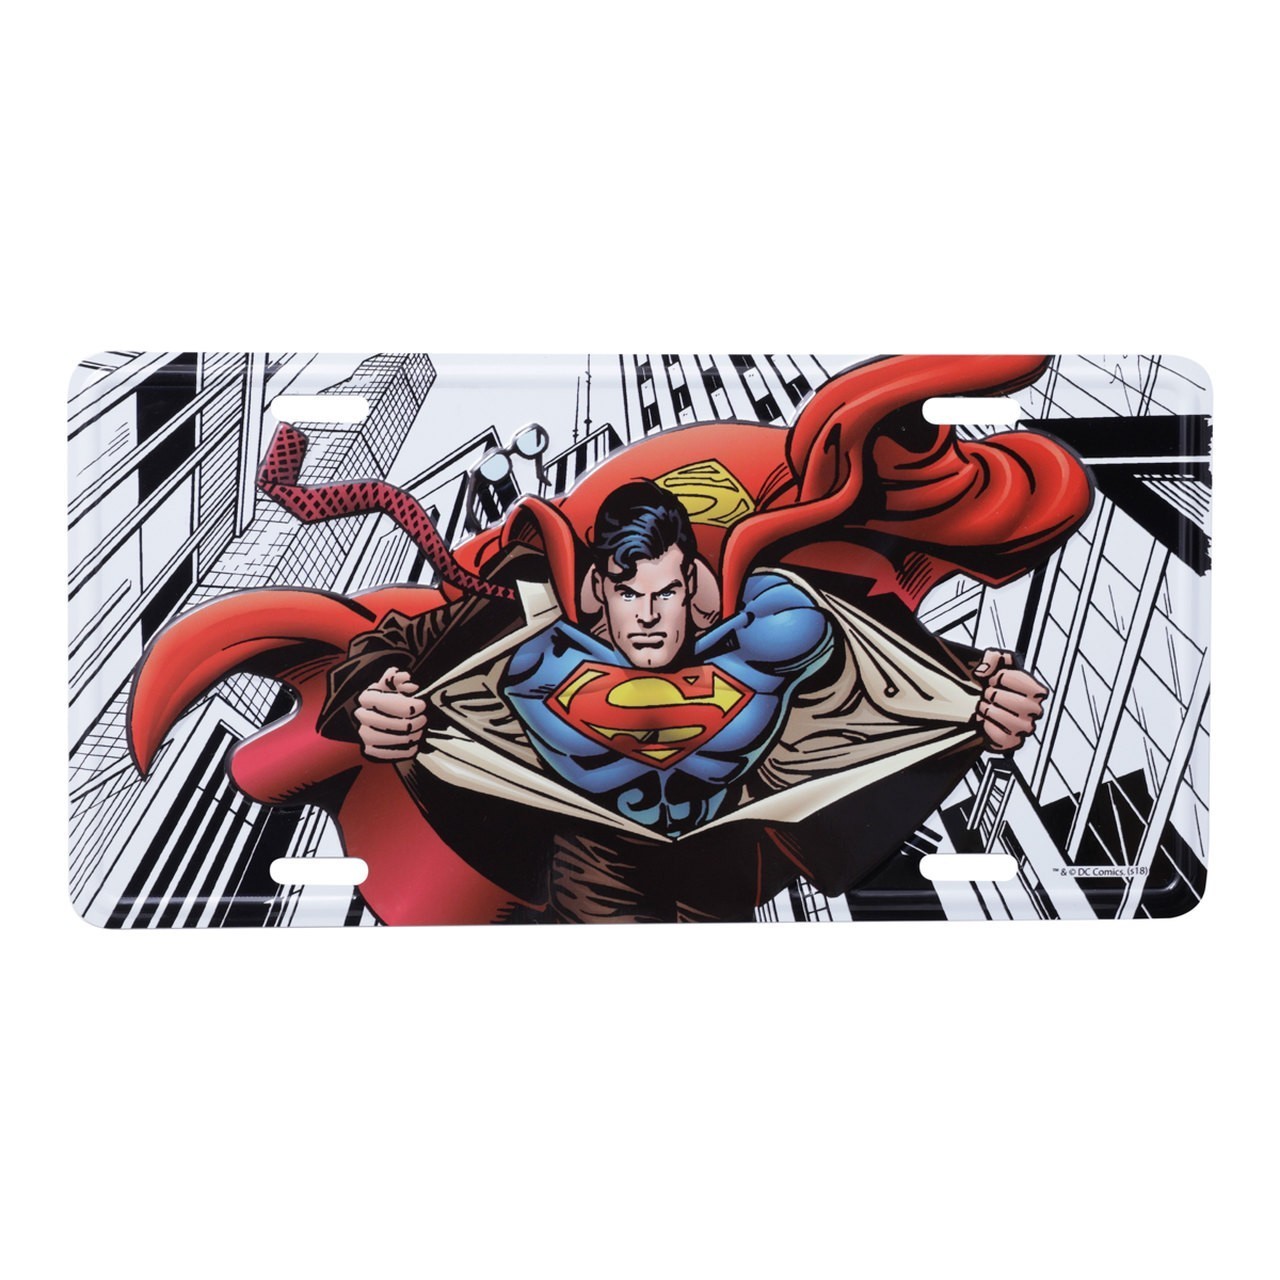 Placa de Carro: Super Homem Superman Dc Comics - Urban